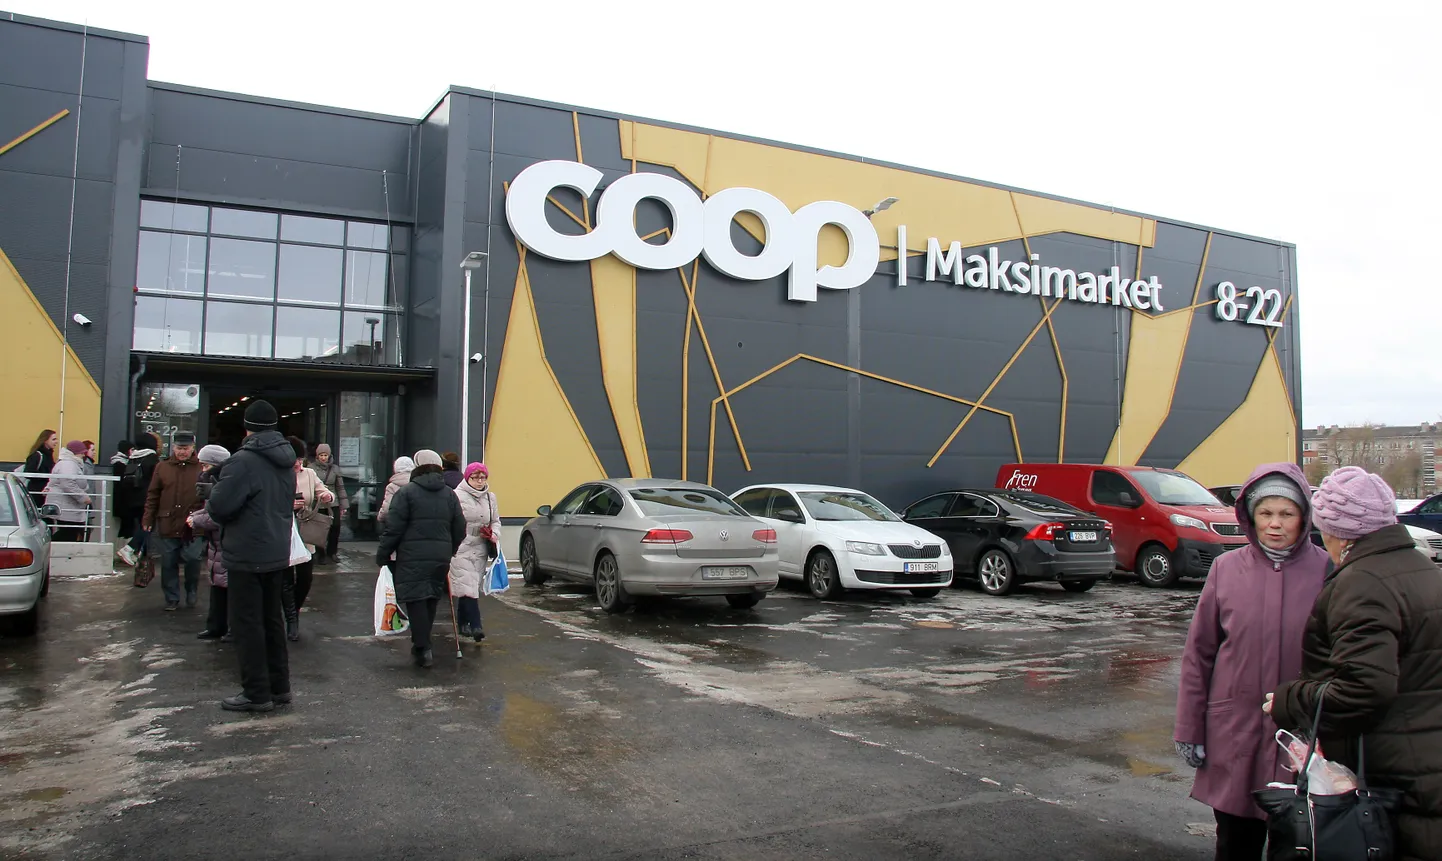 "Coop" отреагировал на чрезвычайное положение открытием э-магазина, где кризисные комплекты могут заказать и идавирусцы. На снимке магазин "Maksimarket" сети "COOP" в Силламяэ.